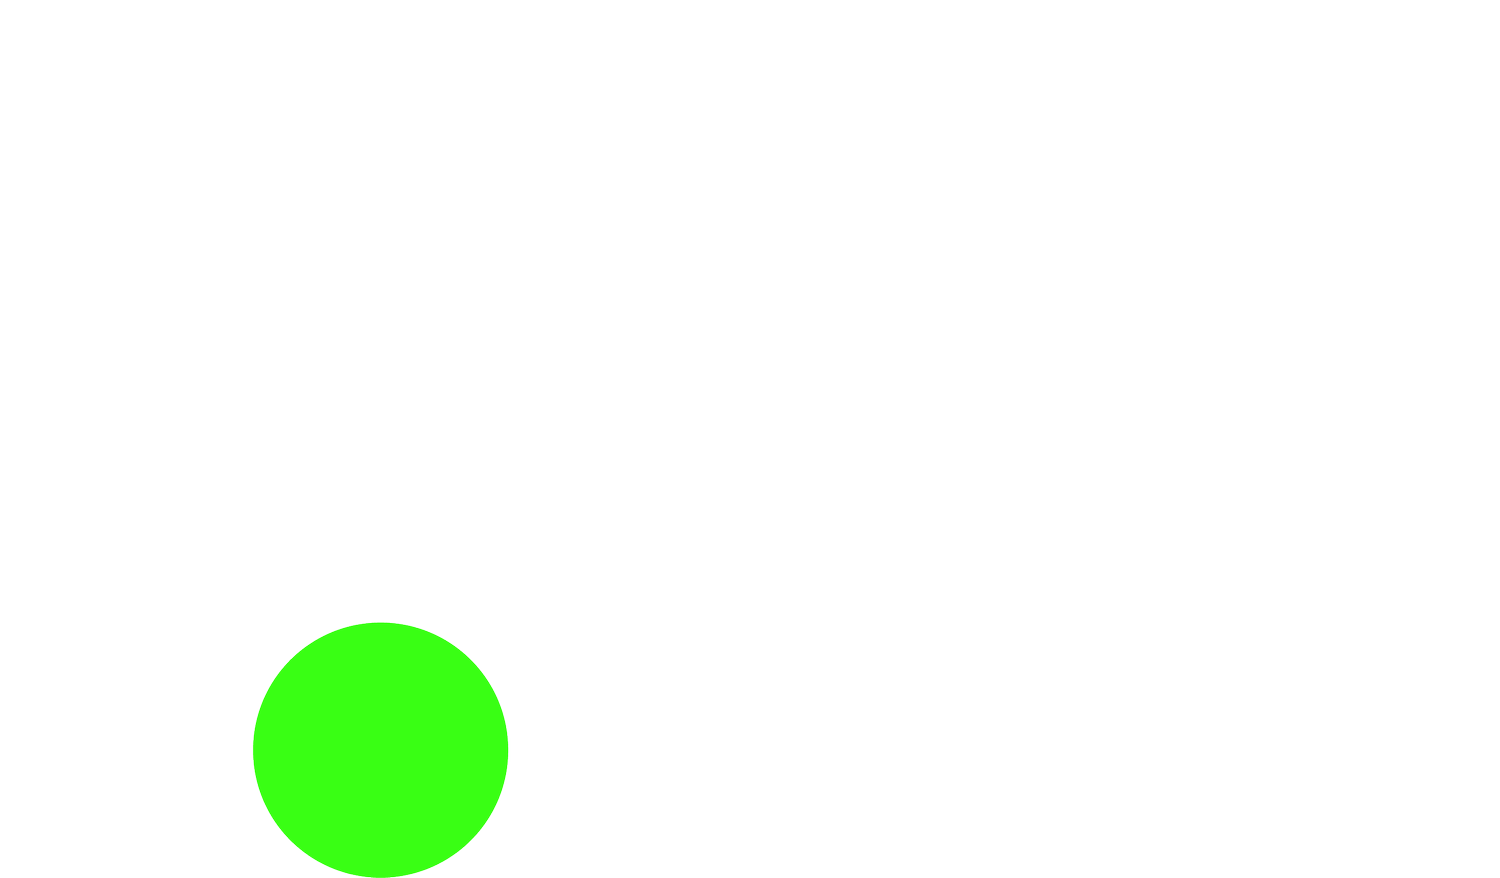 The Hidden 20%